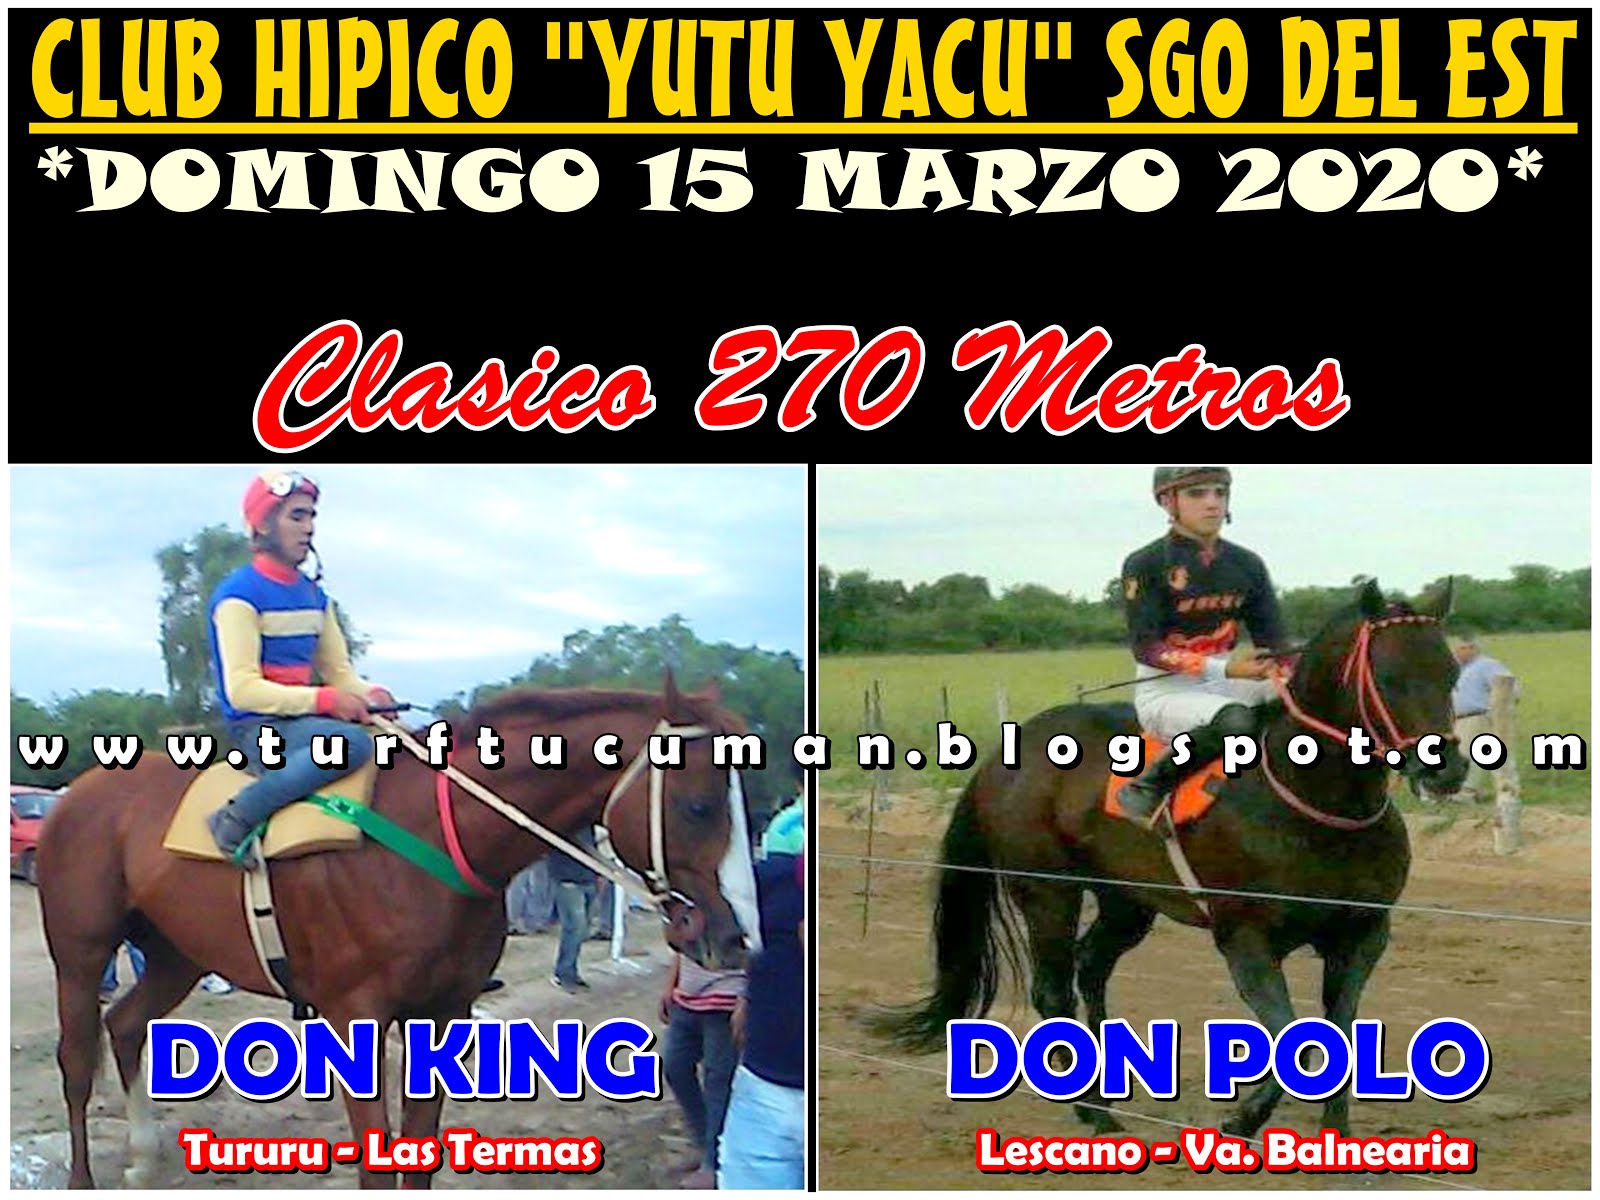 DON POLO VS DON KING